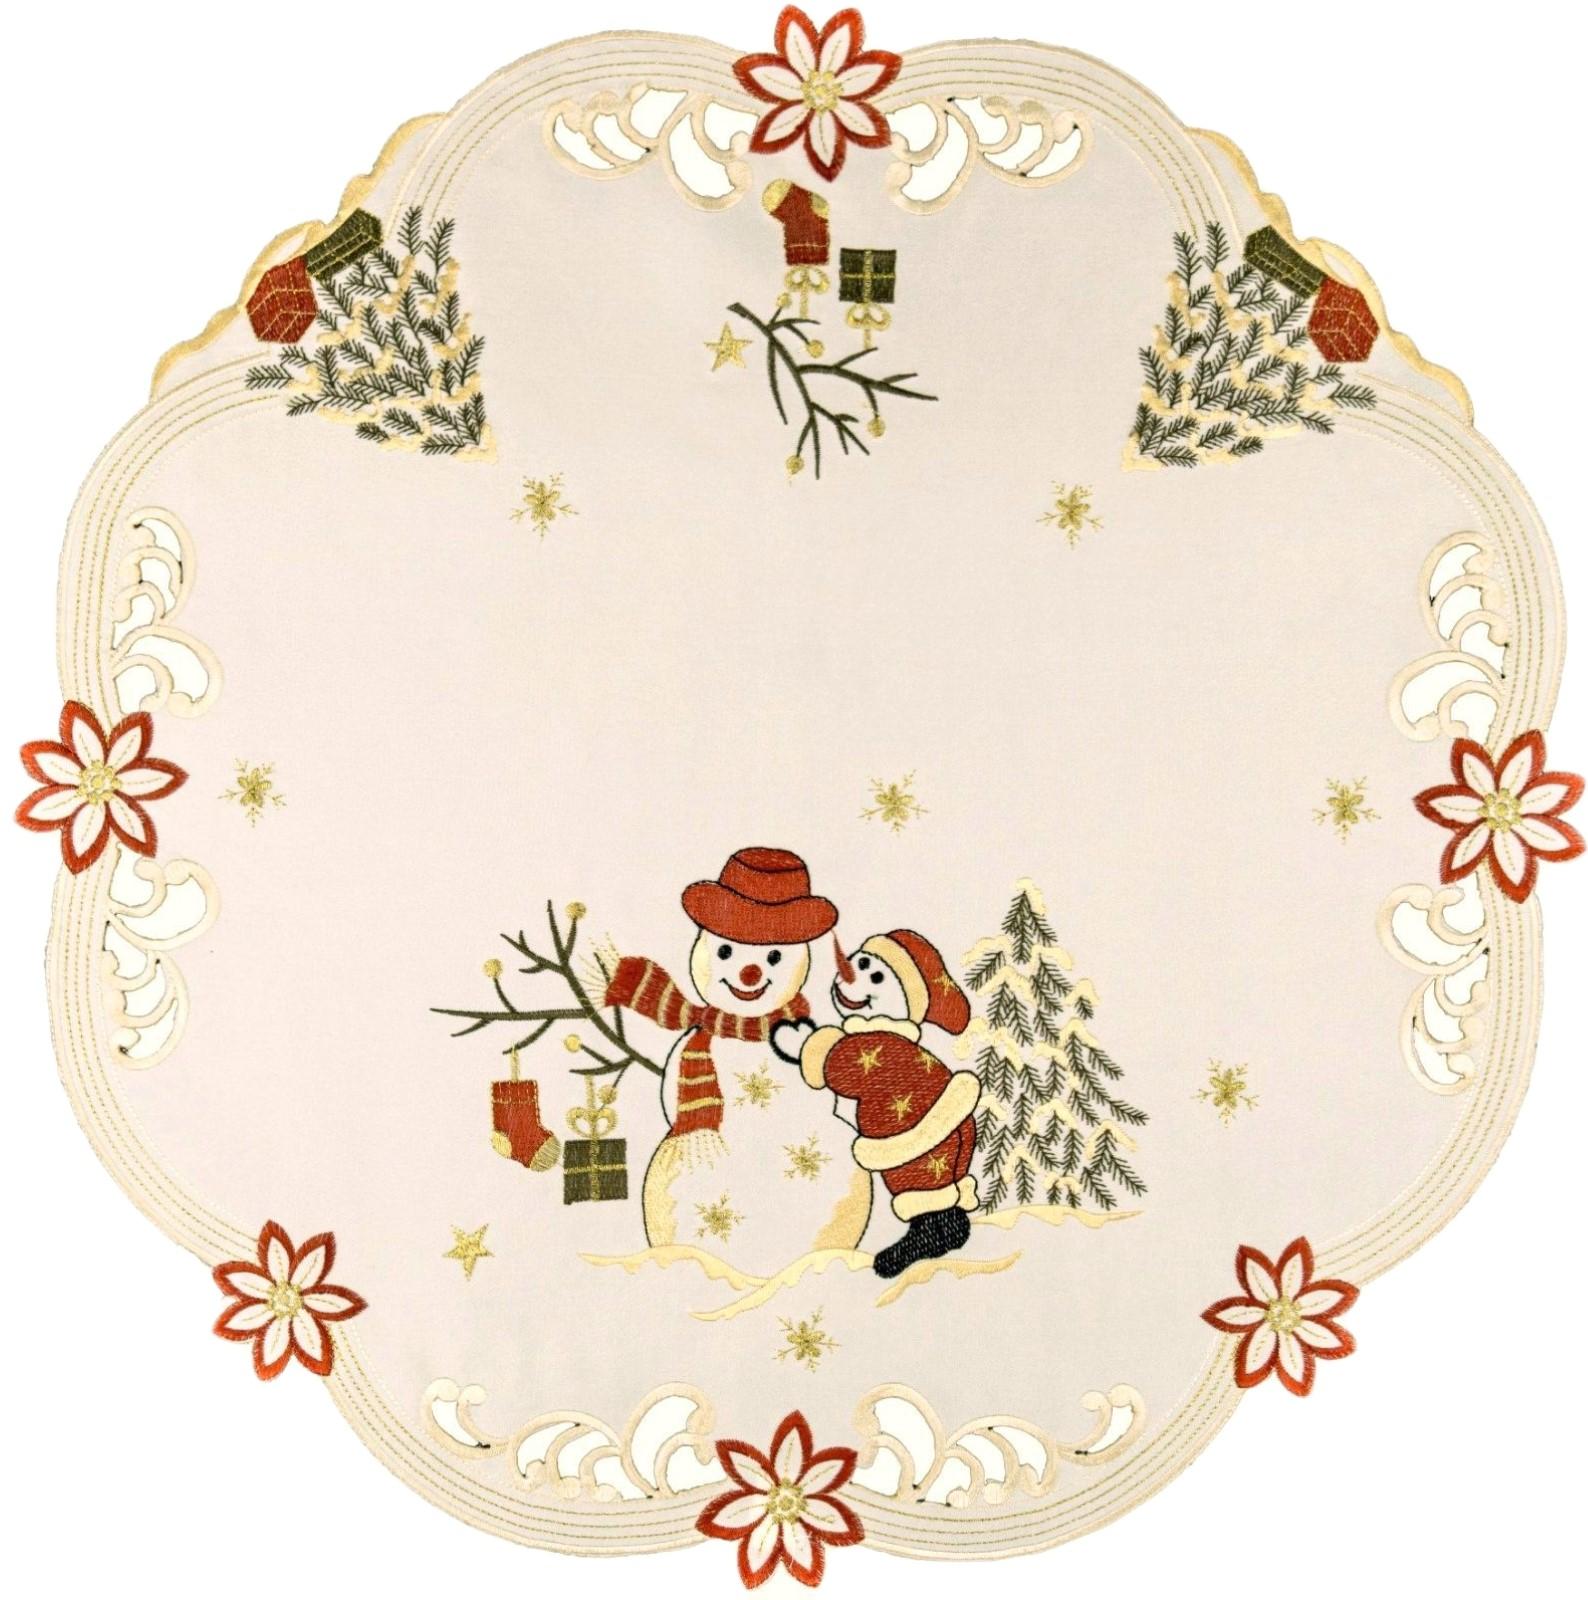 Weihnachten Tischdecke Tischläufer Schneemann Mitteldecke Deckchen Deko  Bestickt | eBay